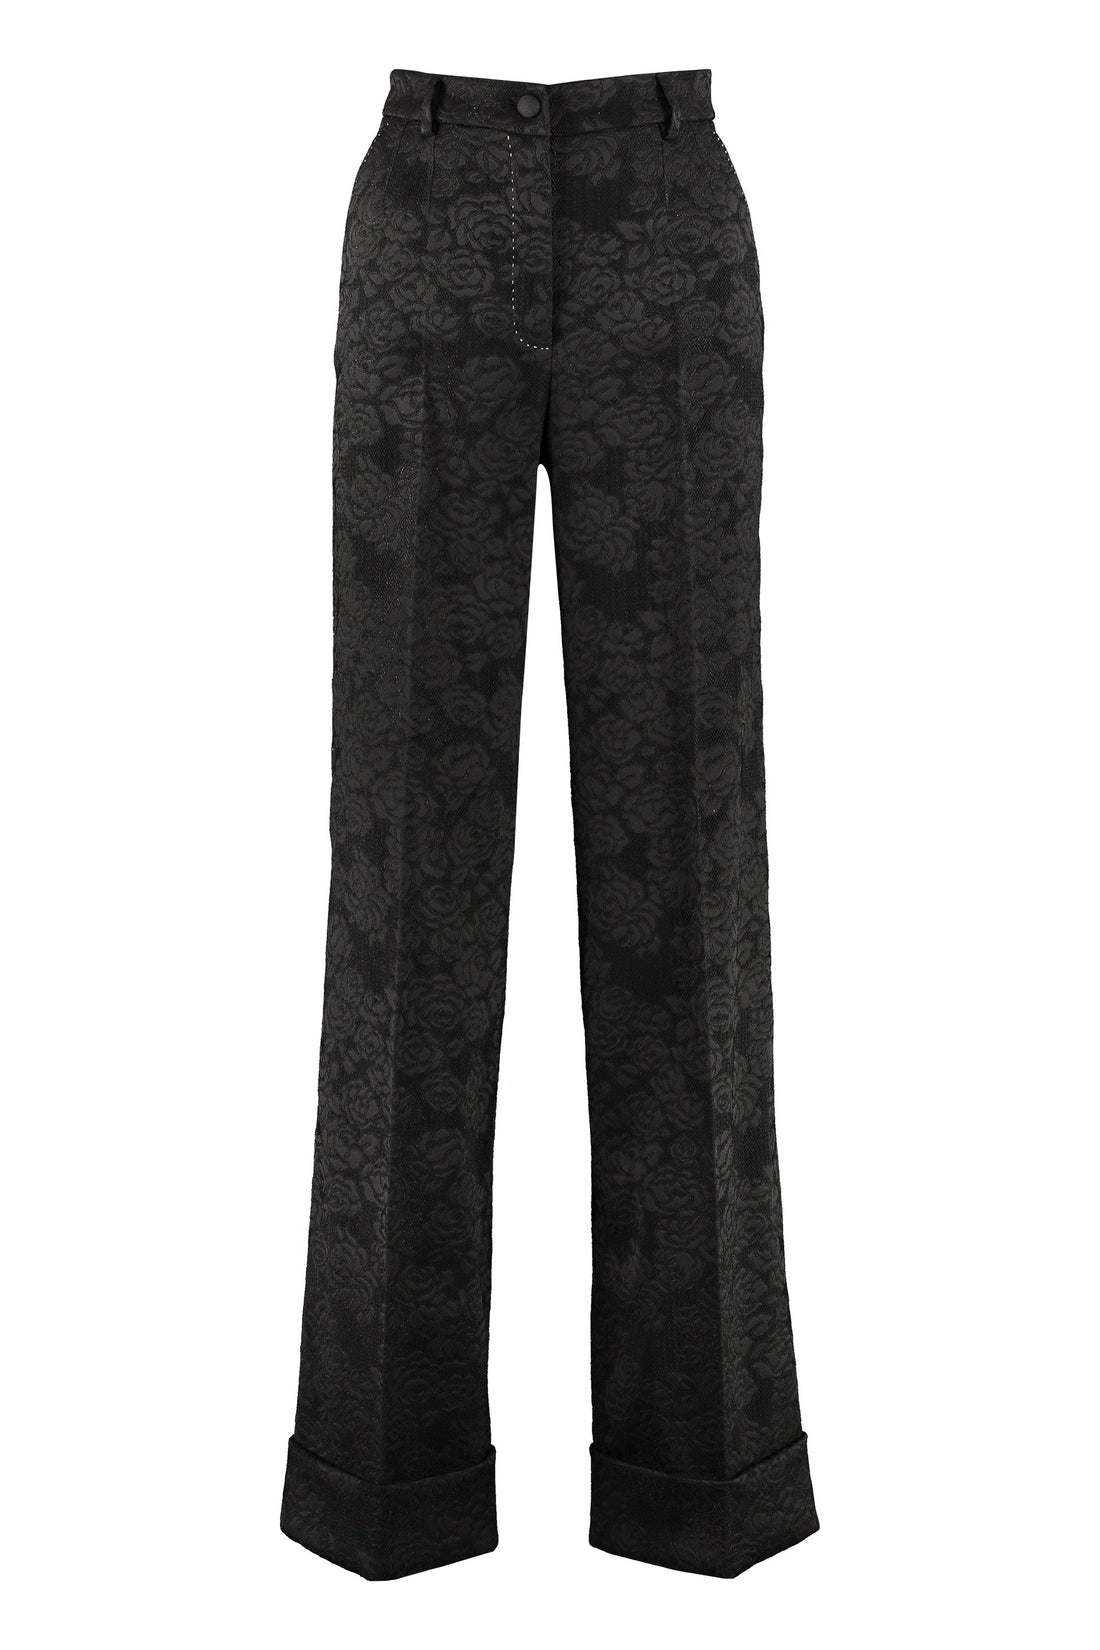 Dolce & Gabbana-OUTLET-SALE-Jacquard trousers-ARCHIVIST